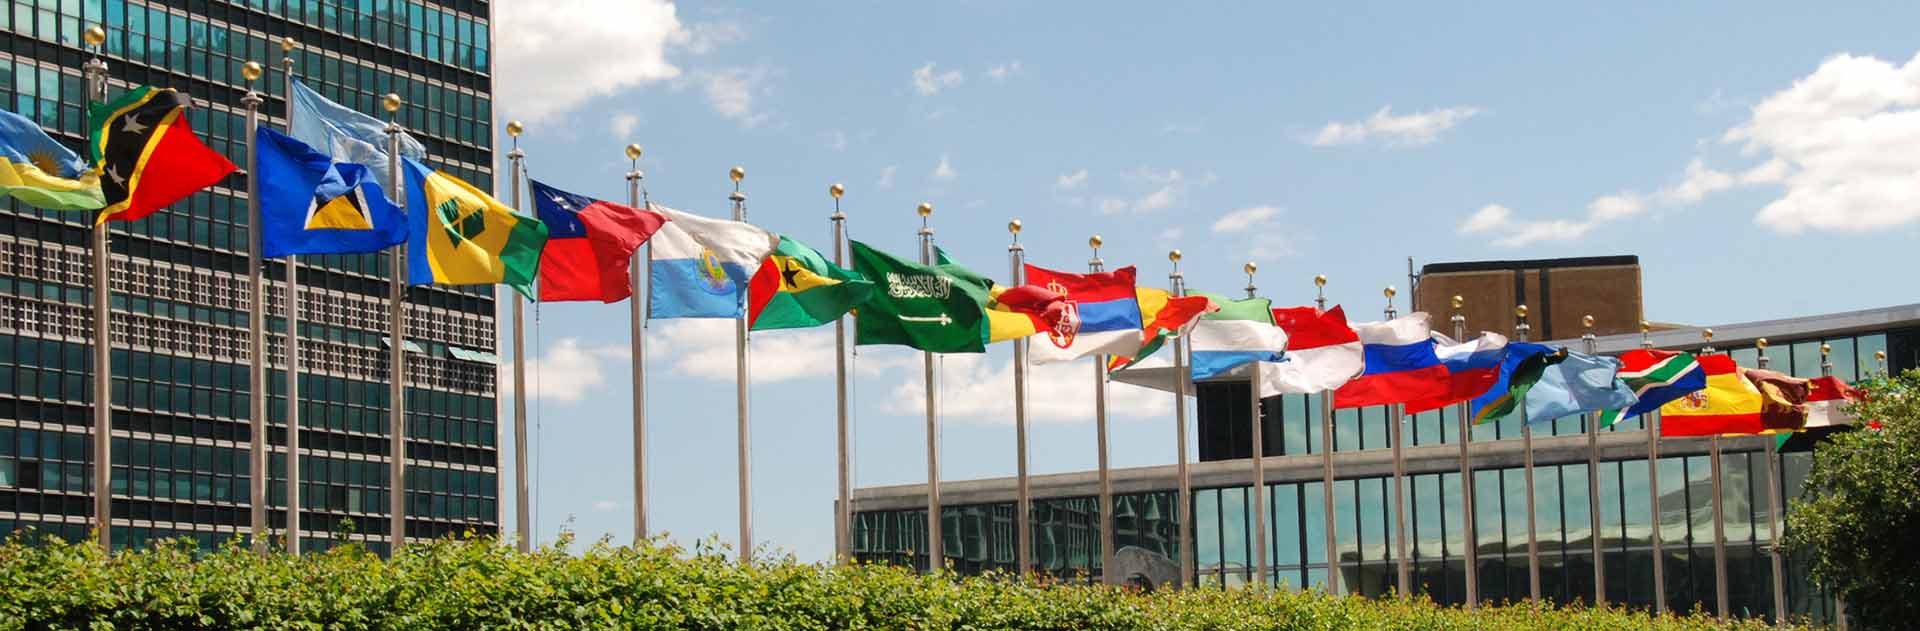 Banderas de los países miembros de la ONU en el complejo de oficinas de Naciones Unidas en Nueva York, Estados Unidos. Las banderas son símbolos de soberanía de los países.